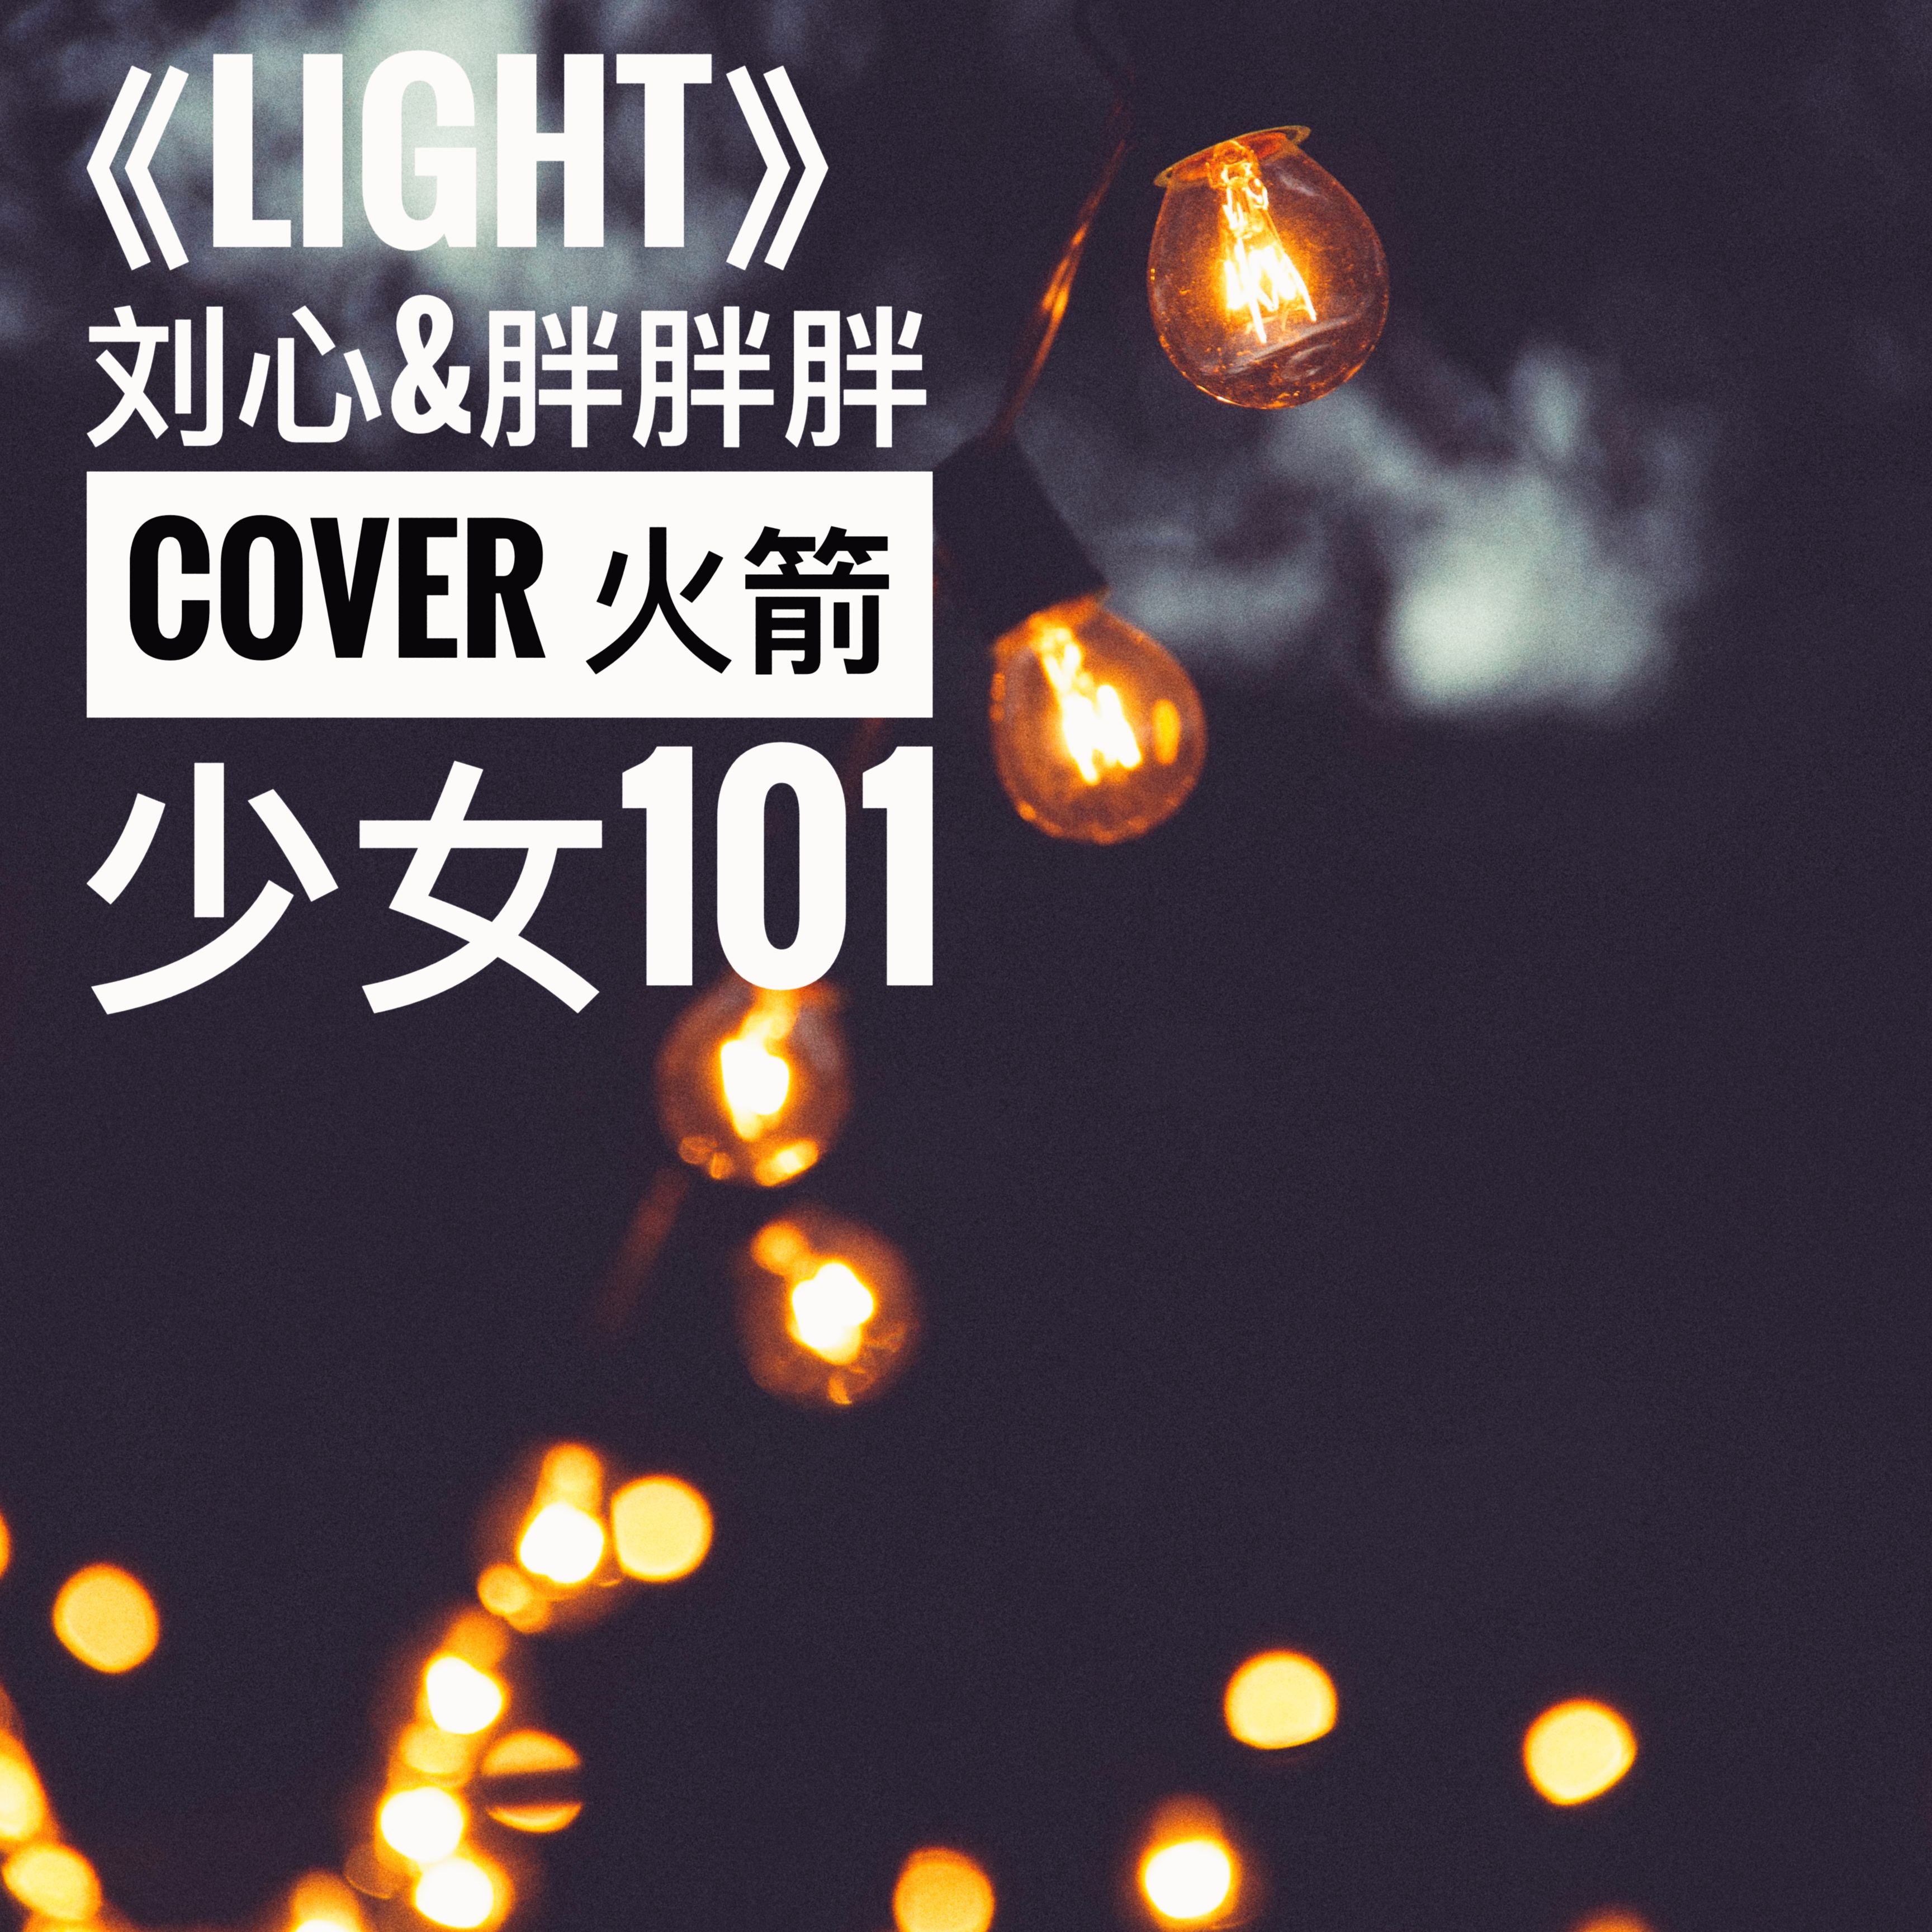 Light Cover: huo jian shao nv 101